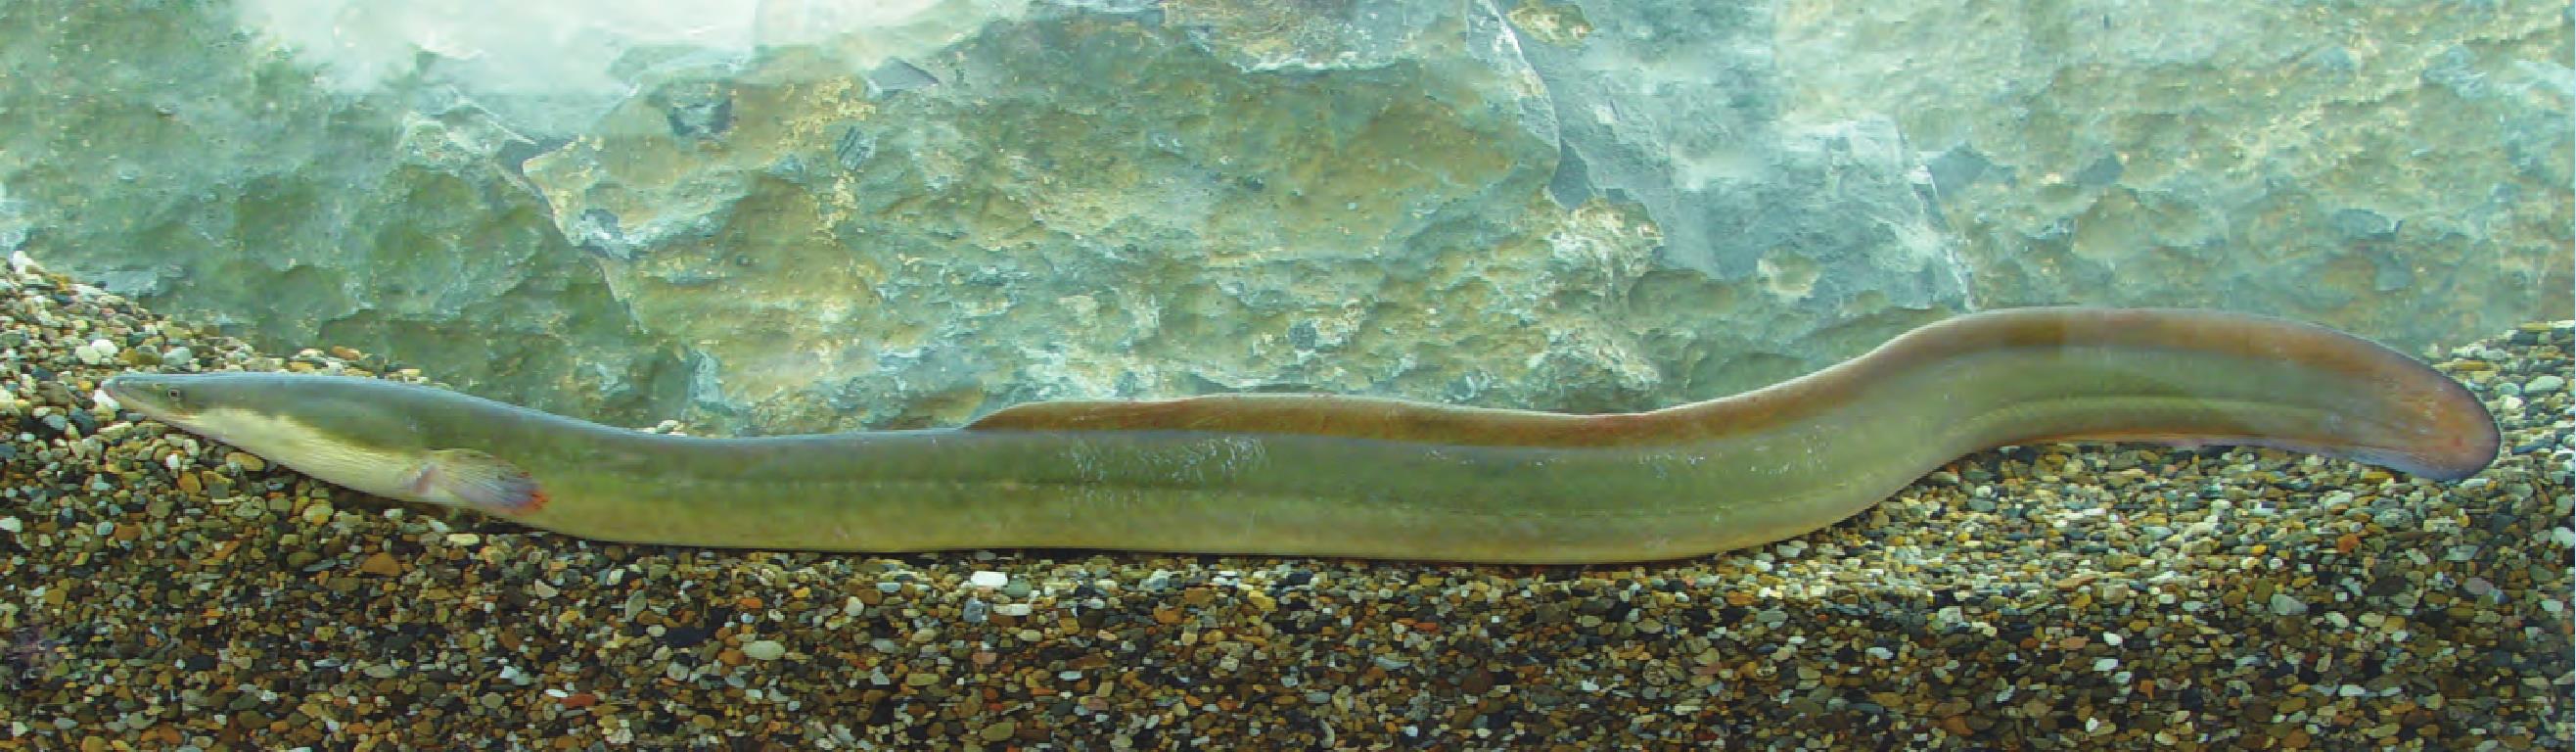 黄河鳗鲡图片